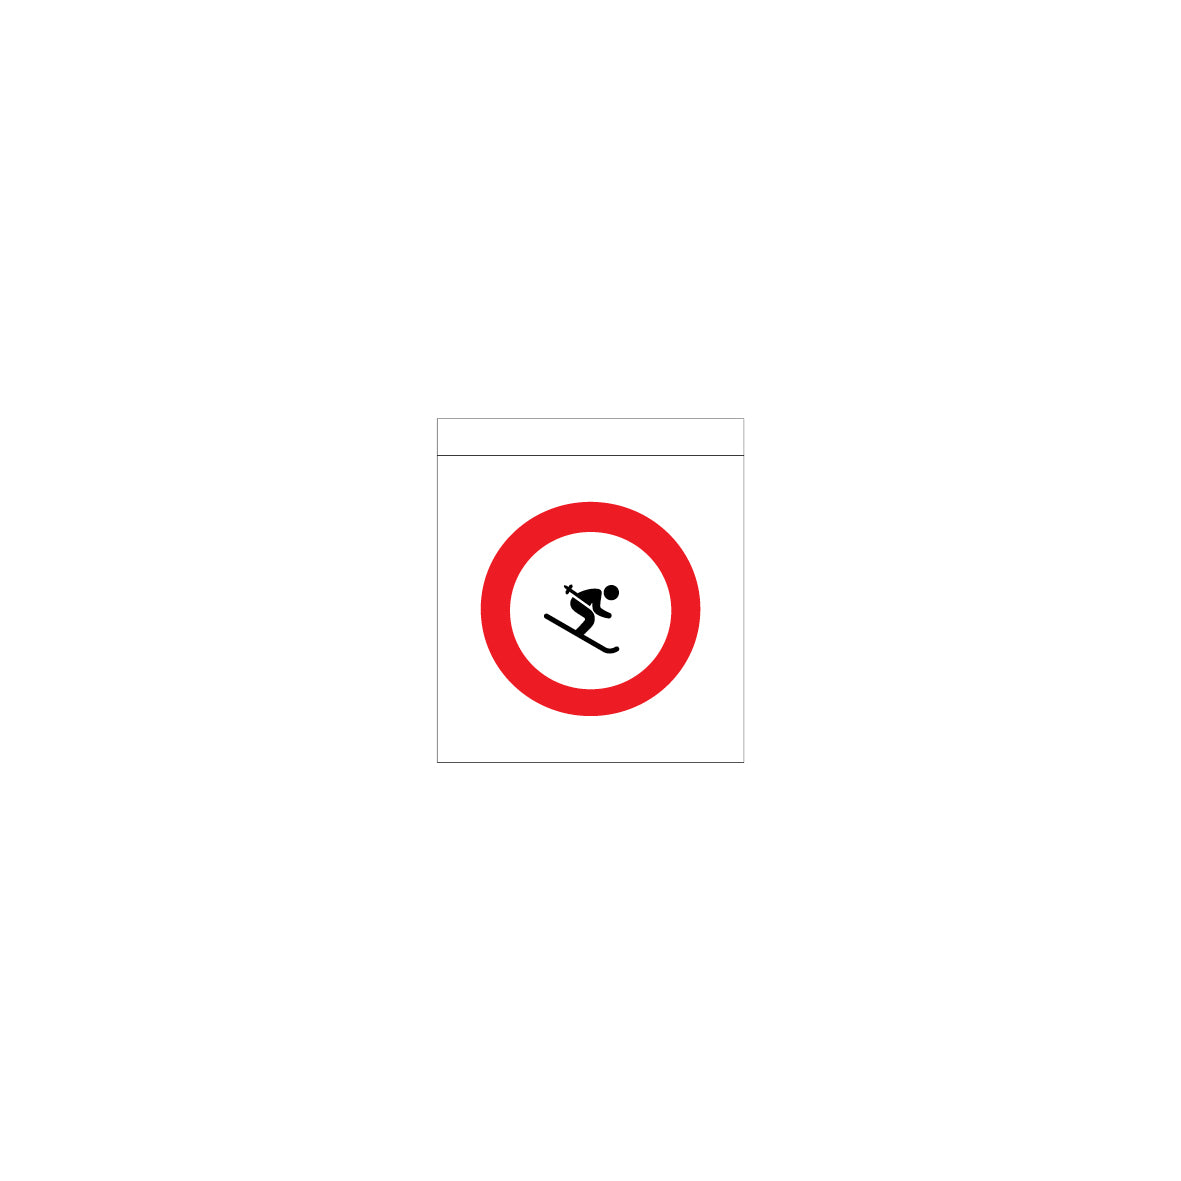 Einzelflagge gelocht, 1.0352, Skifahren verboten, 25/27.5 cm, gelocht für Seileinzug